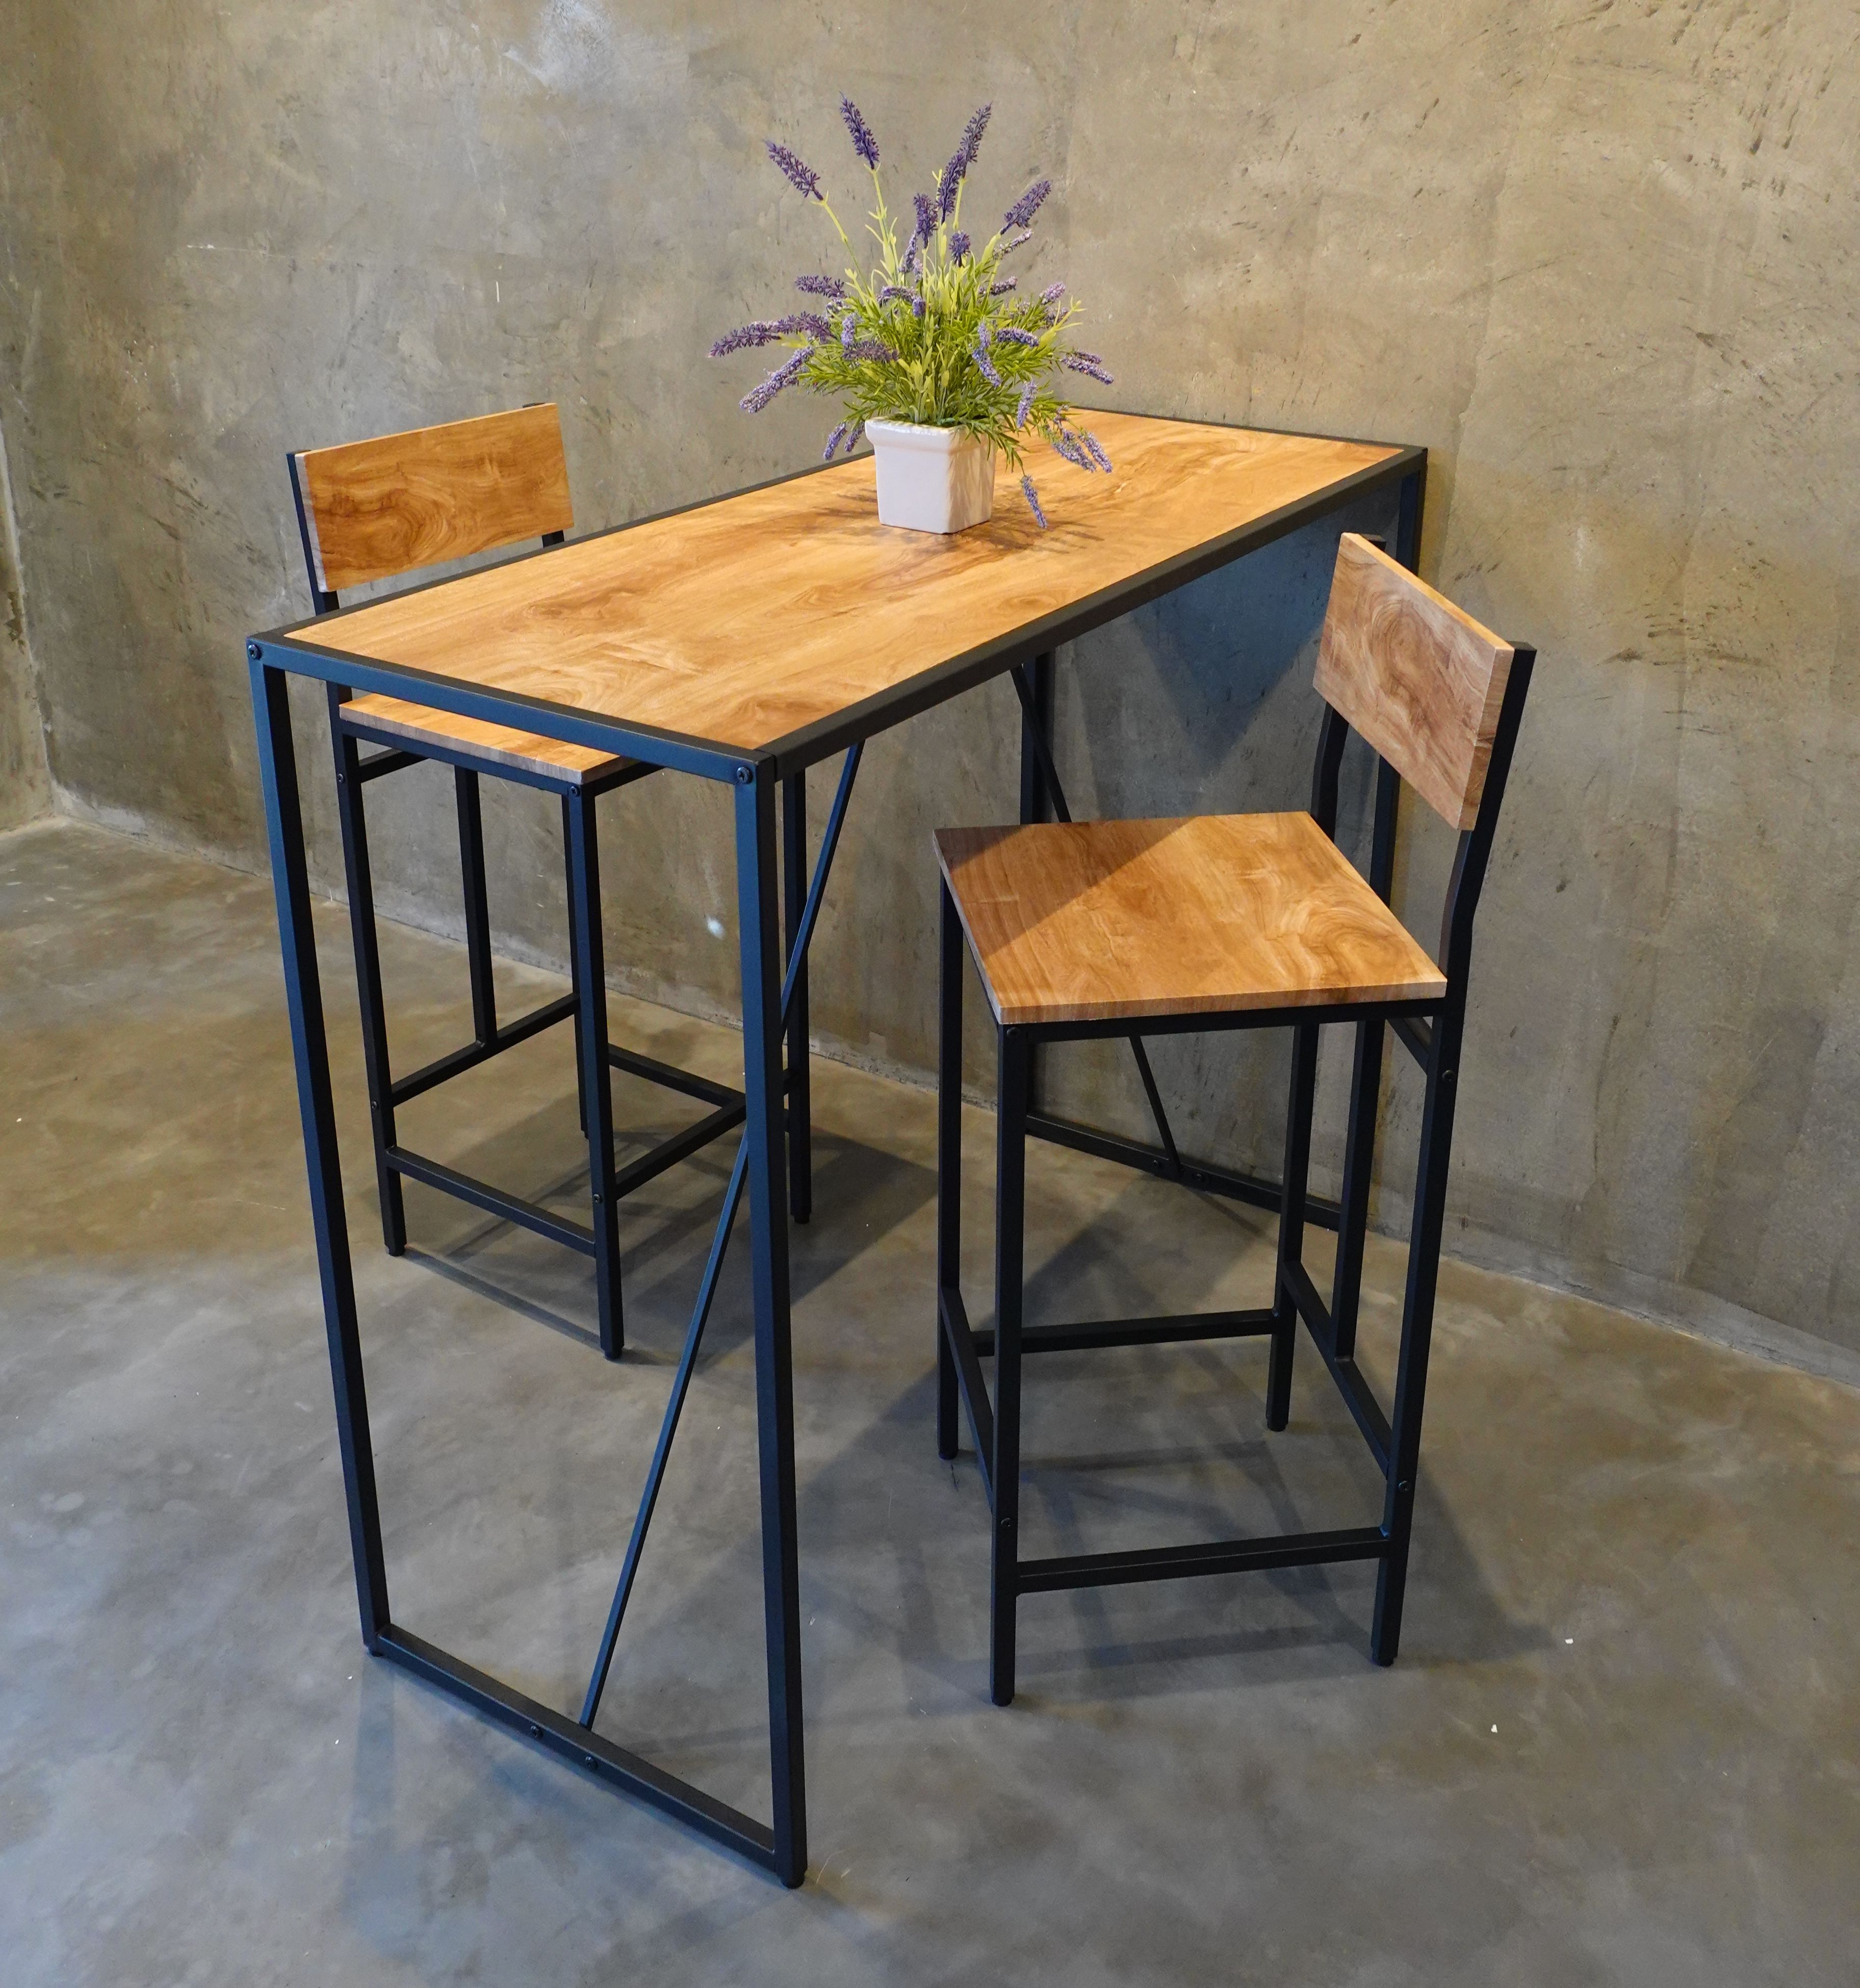 โต๊ะบาร์สูง ชุดโต๊ะเก้าอี้ลอฟท์ โต๊ะบาร์สูงพร้อมเก้าอี้ #FG-1976 โต๊ะบาร์ทรงสูง โต๊ะไม้ ชุดโต๊ะกินข้าว โต๊ะพร้อมเก้าอี้